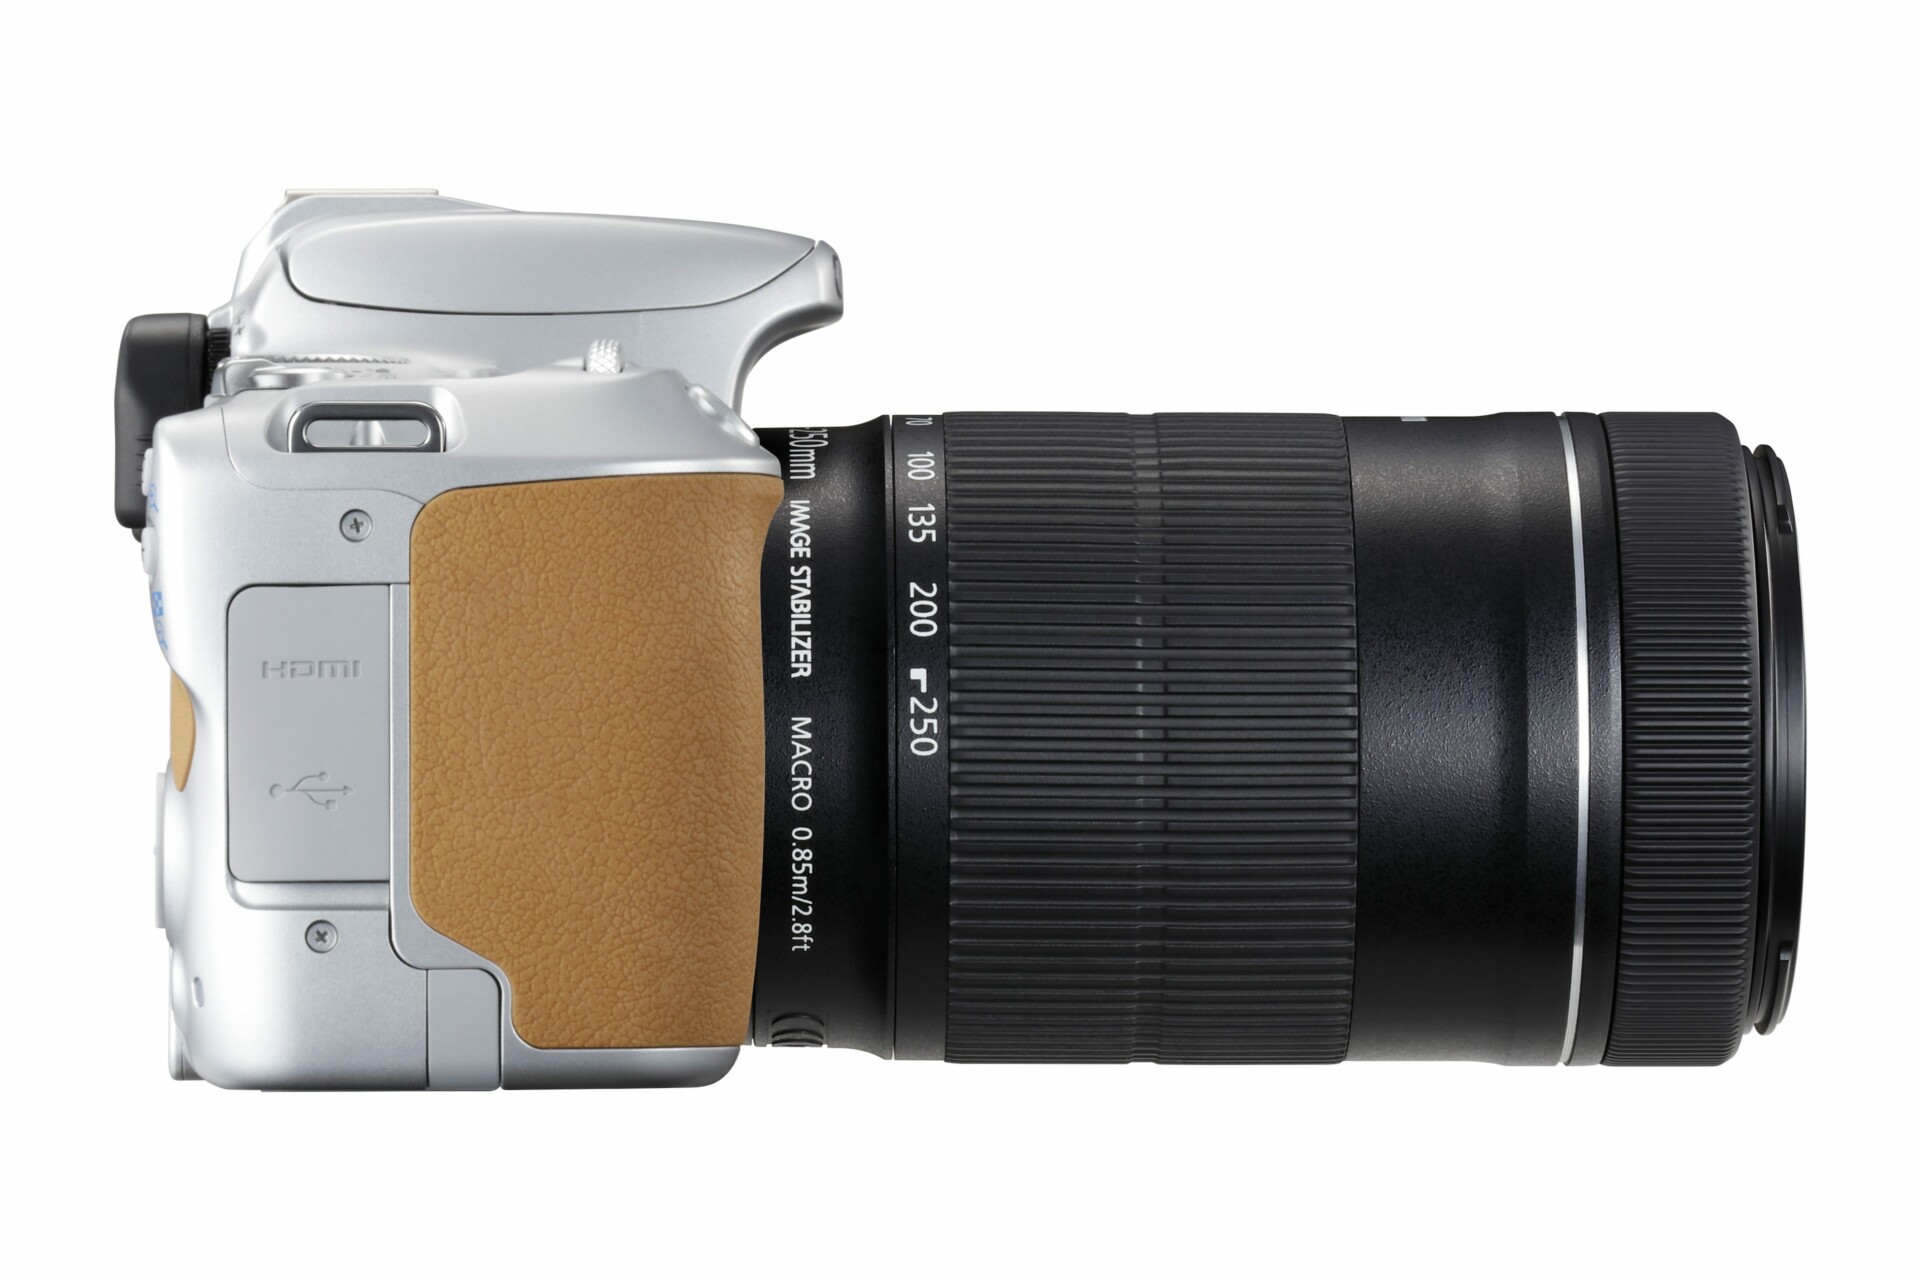 Canon EOS 200D máy ảnh DSLR gọn nhẹ, giá từ 15,5 triệu đồng